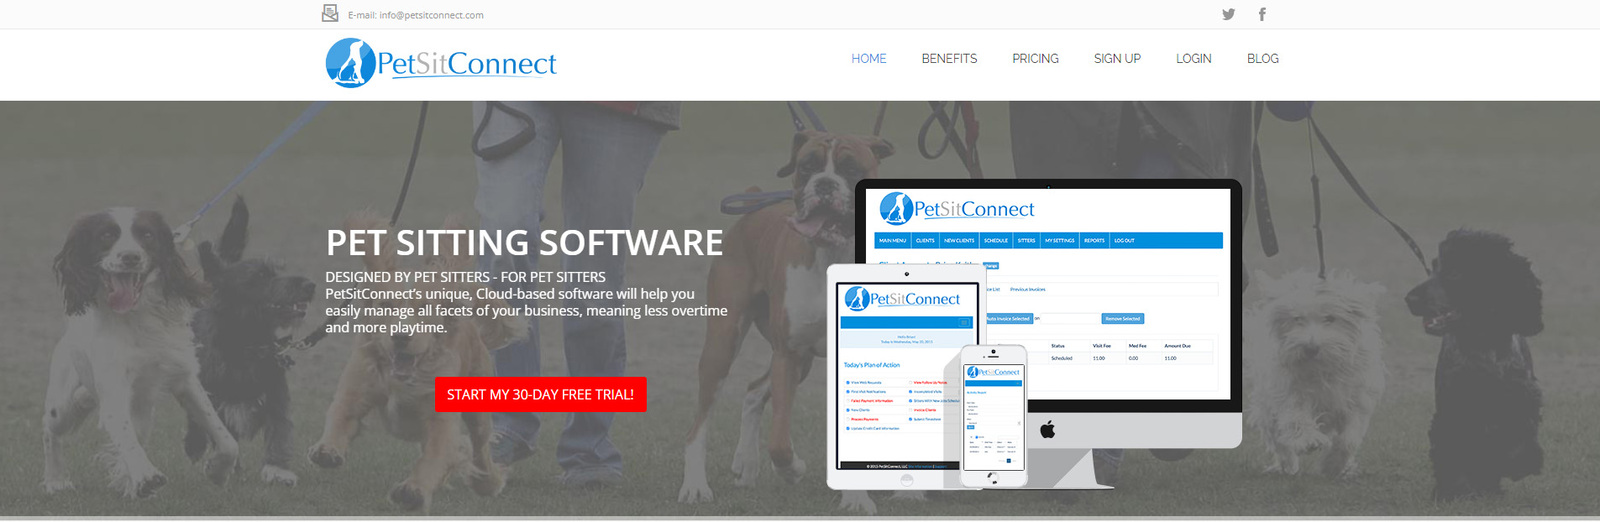 ภาพรวมของ PetSitConnect ตัวเลือกแอปดูแลสัตว์เลี้ยงยอดนิยม